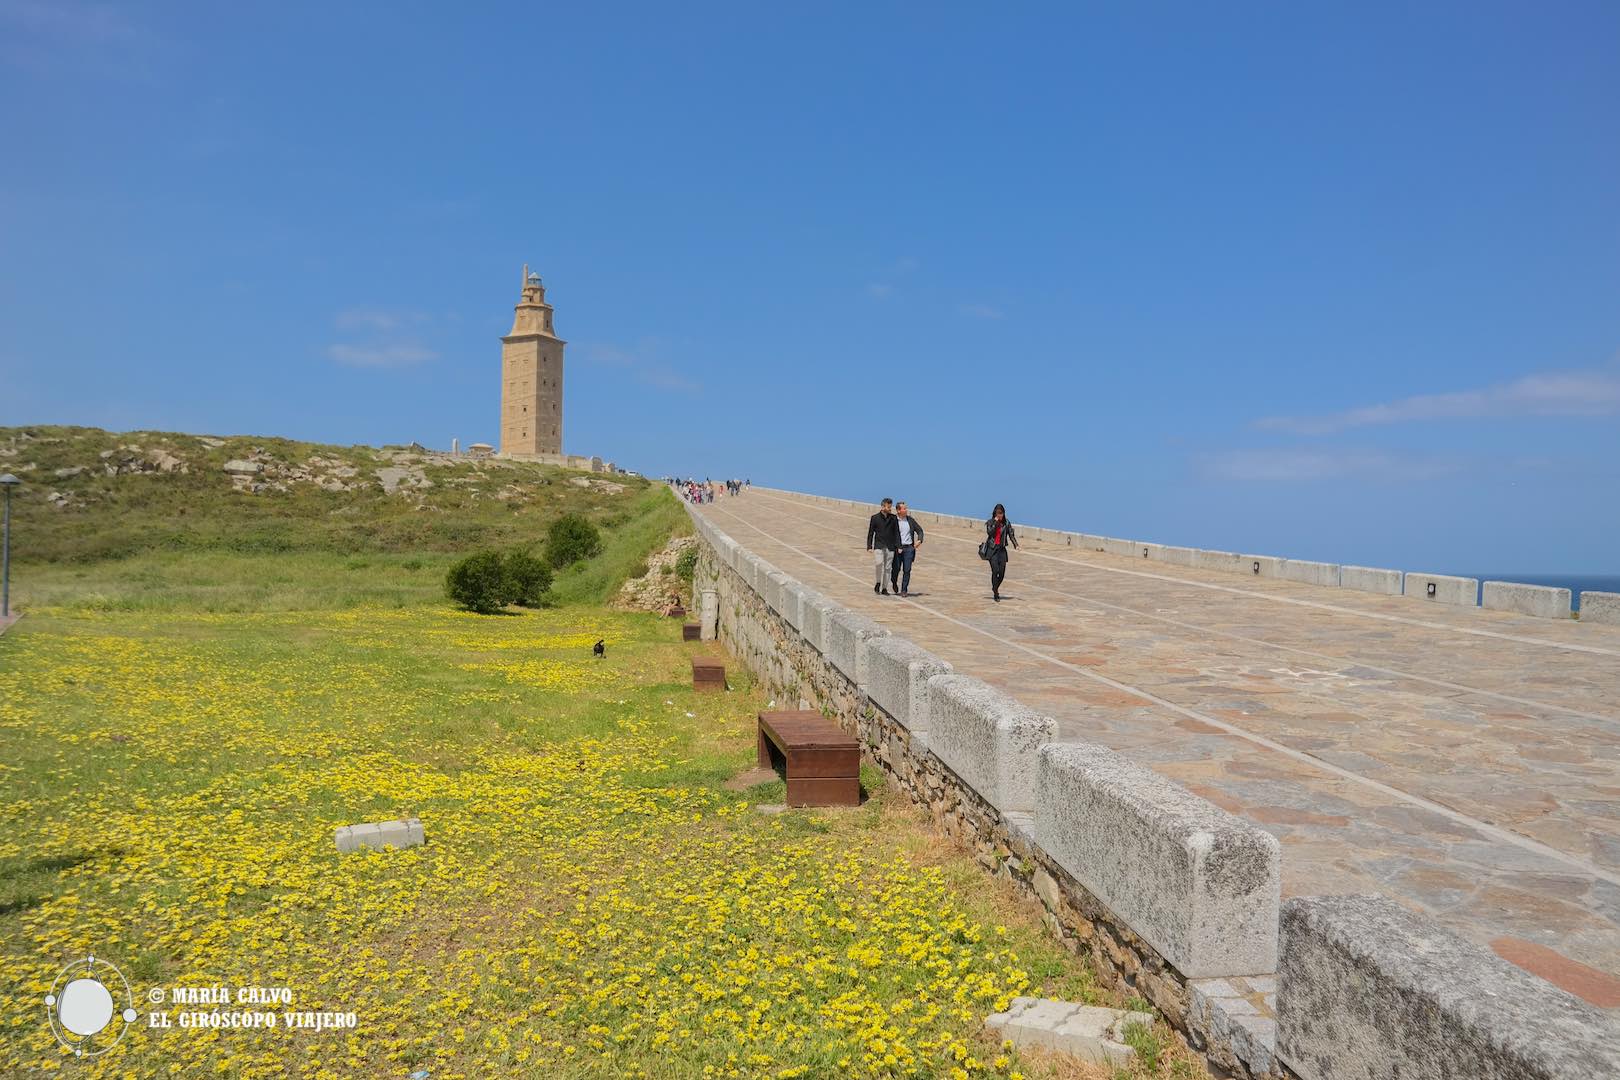 De faros romanos en Galicia: la Torre de Hércules de A Coruña